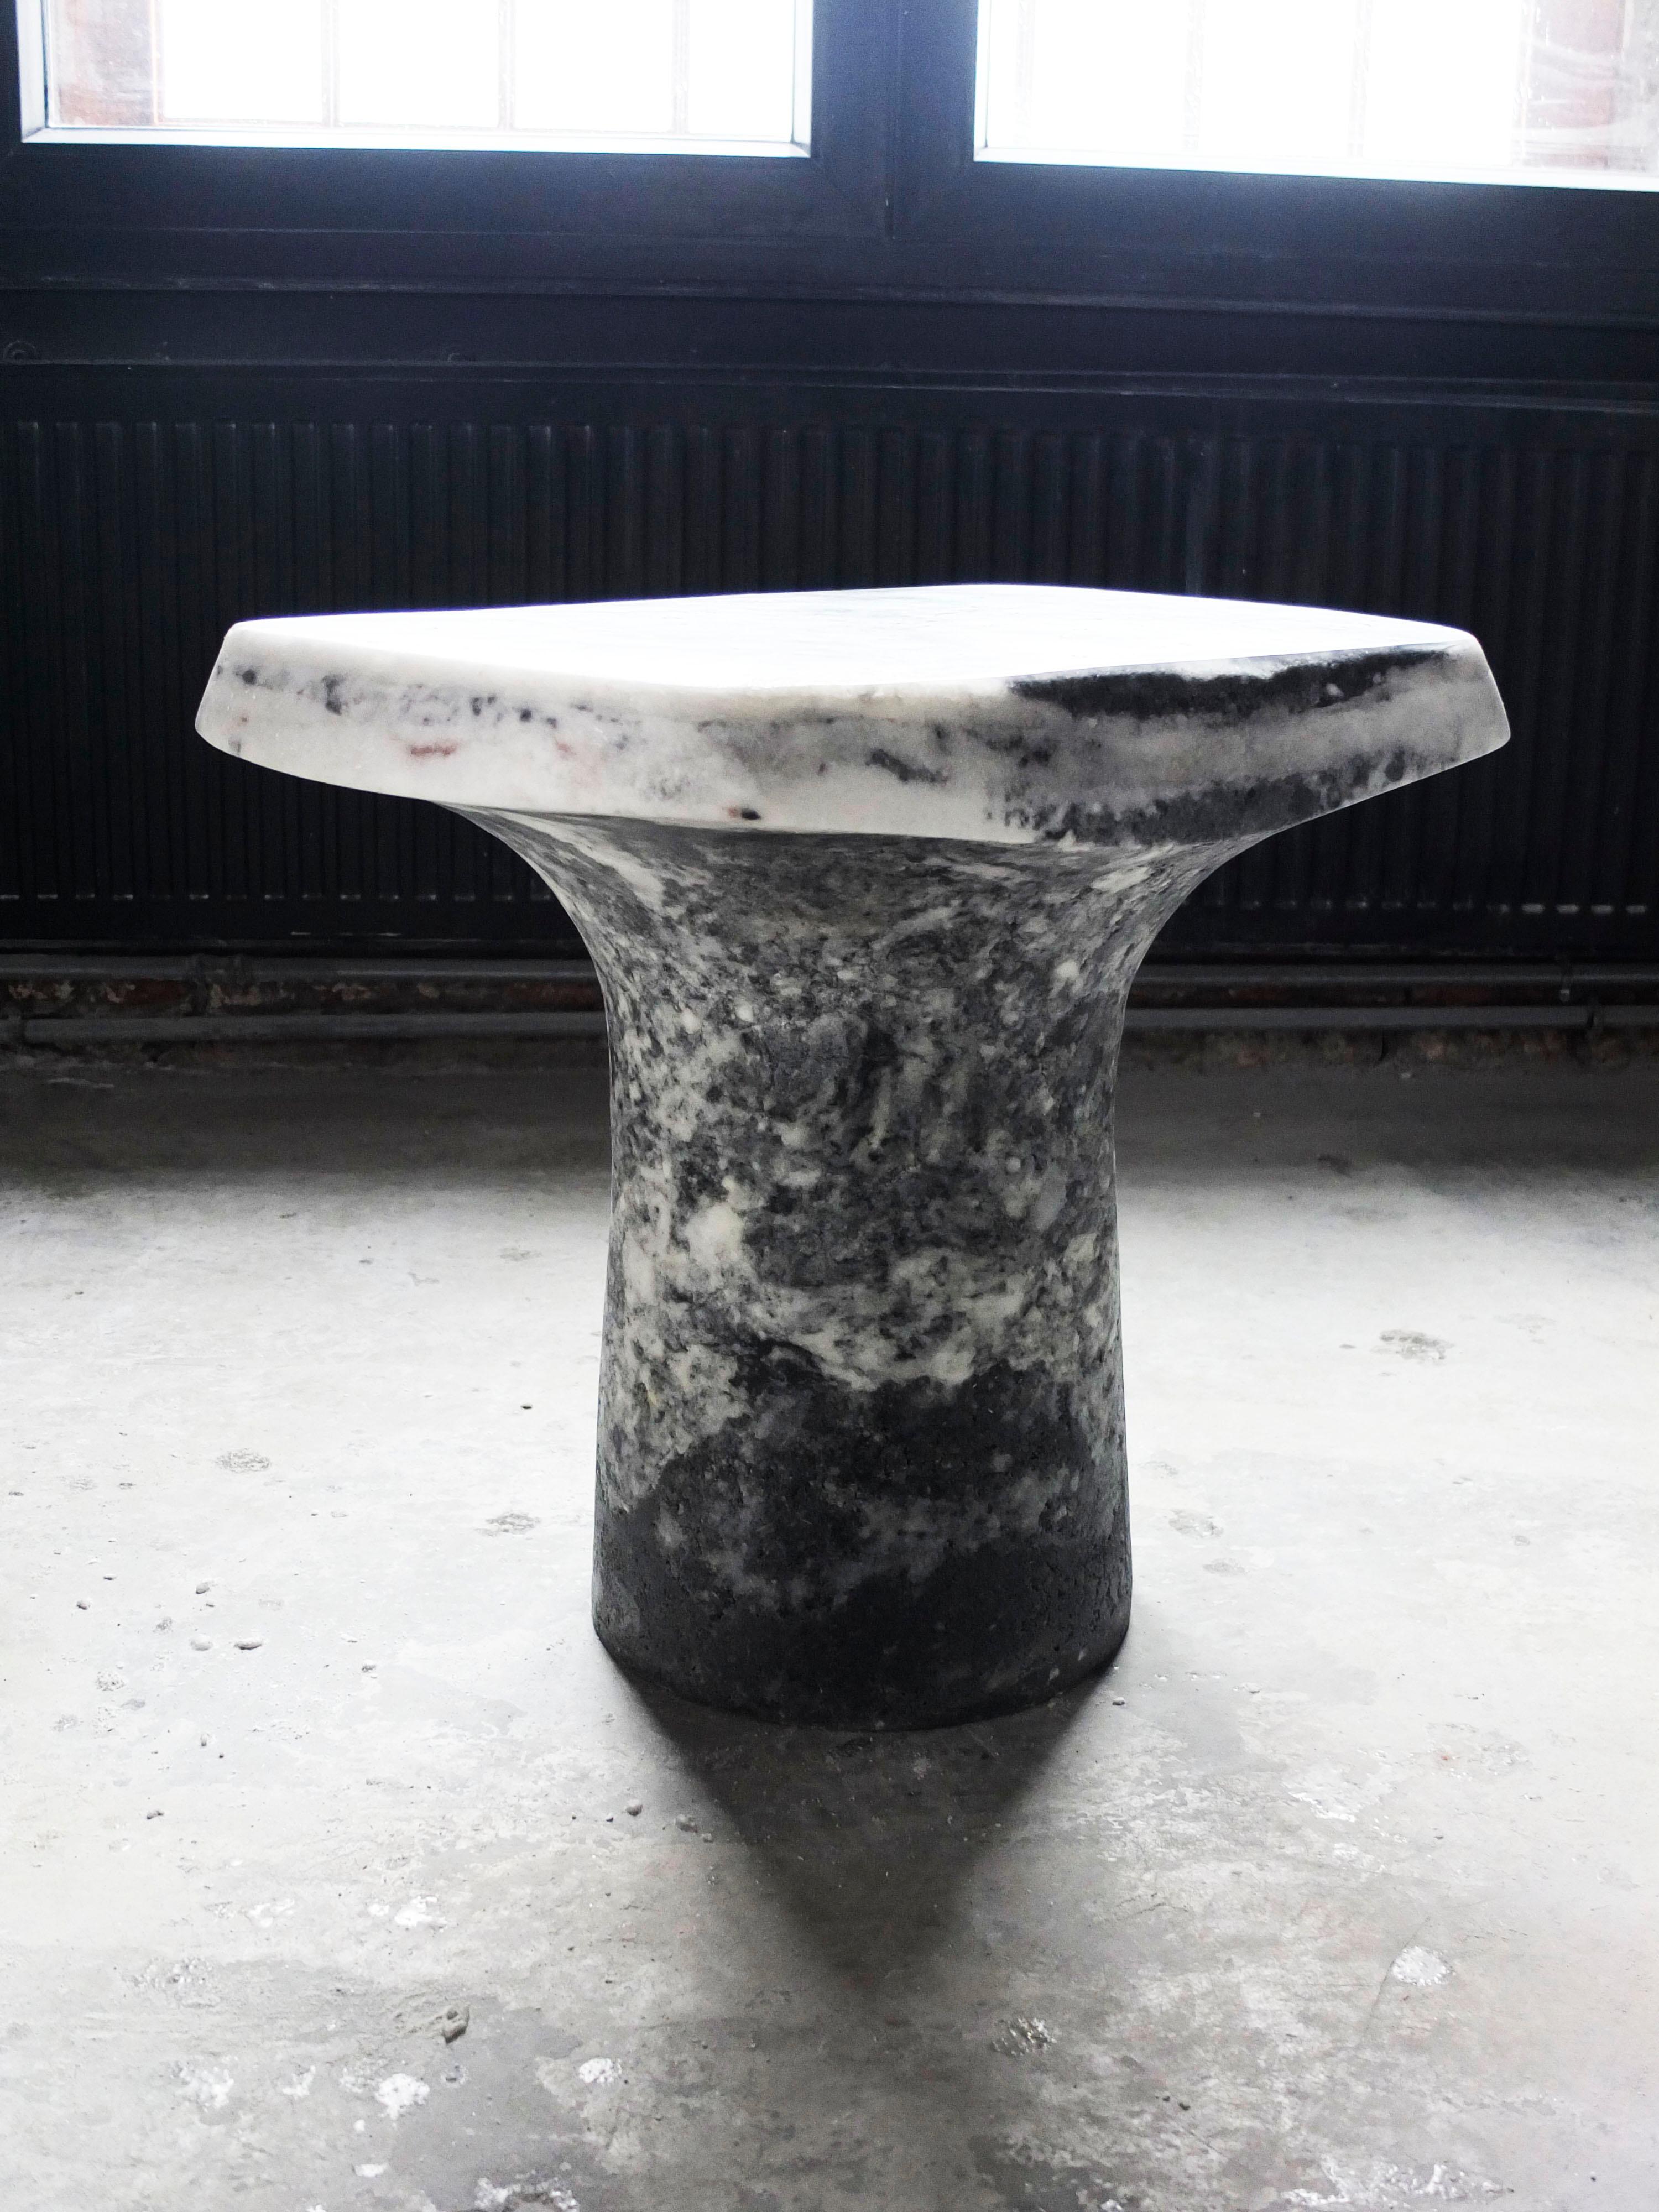 Table T grise de Roxane Lahidji
Dimensions : D 60 x L 40 x H 50 cm.
Matériaux : Marbre Sel.
Poids : 50 kg.

Roxane Lahidji est un designer social spécialisé dans le développement et les applications de matériaux écologiques. Ses recherches portent